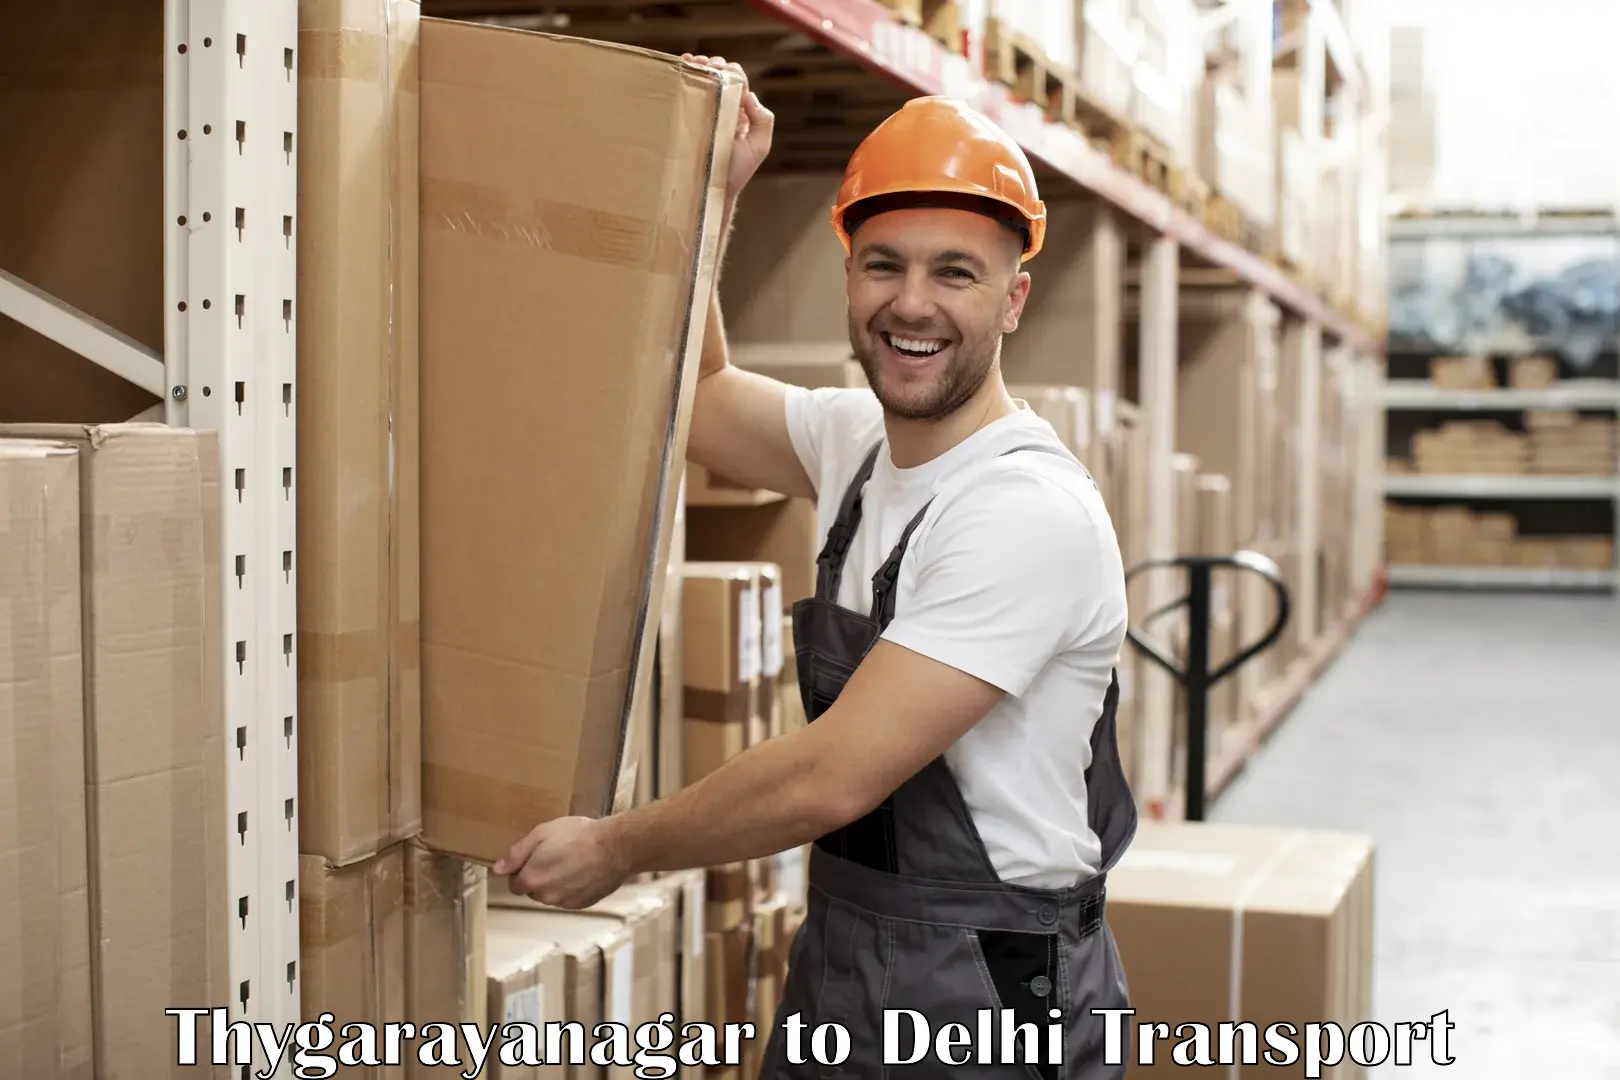 International cargo transportation services Thygarayanagar to IIT Delhi